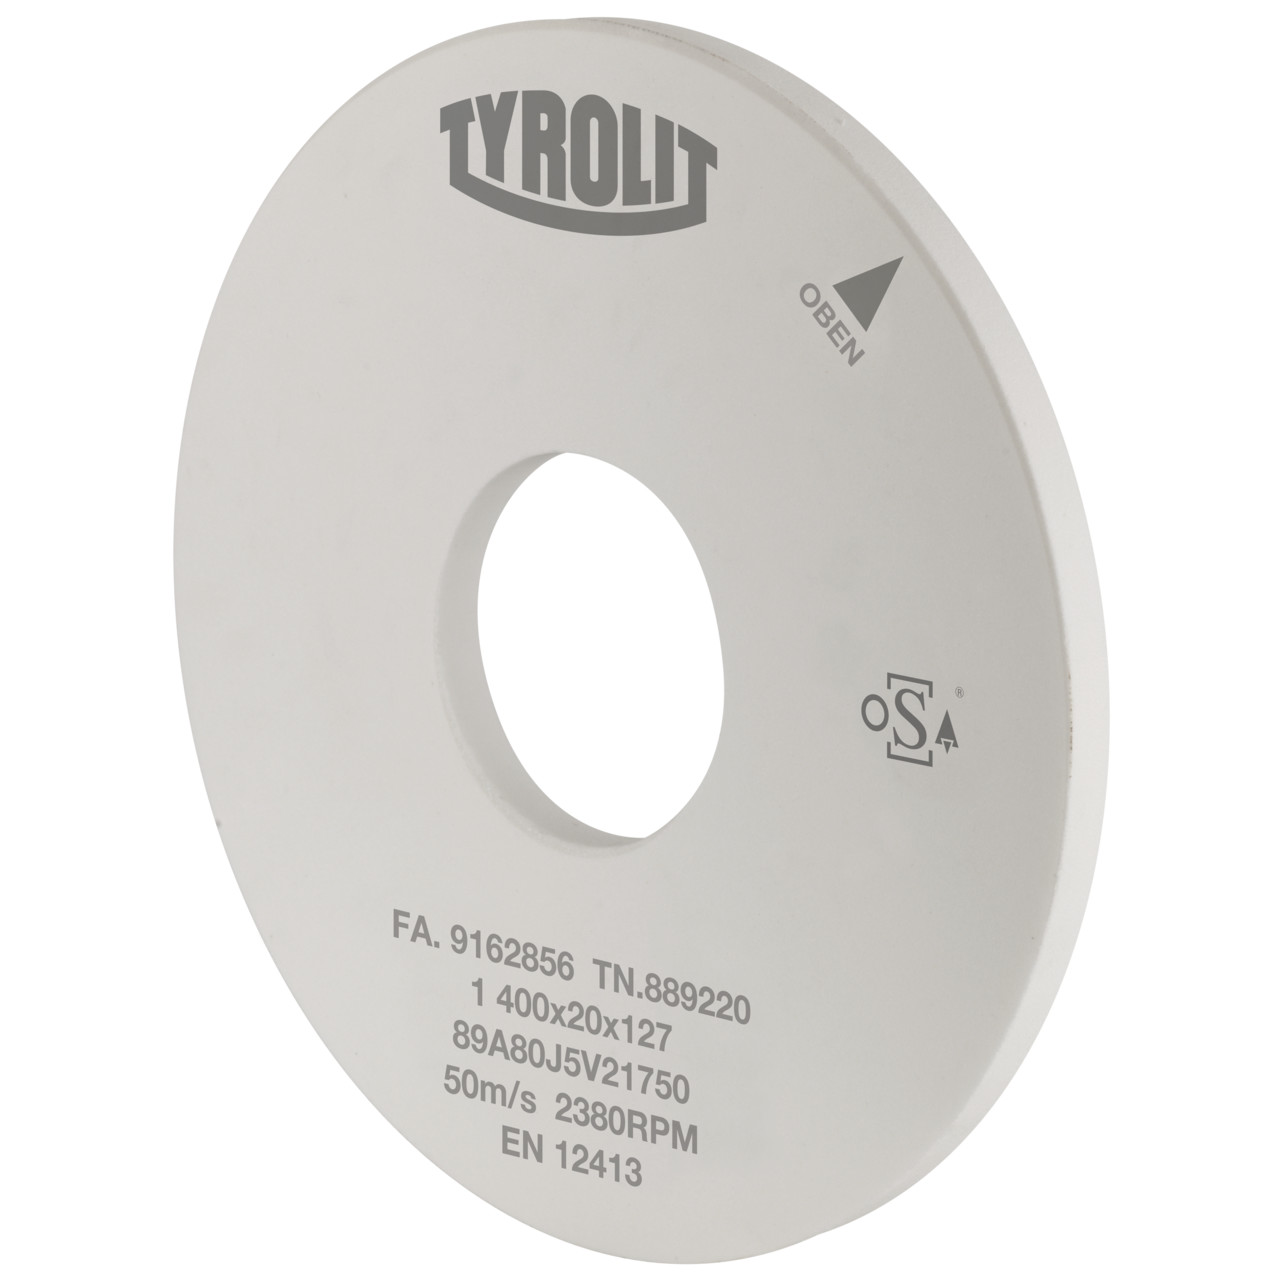 Tyrolit Rettifica cilindrica esterna Ceramica convenzionale DxDxH 400x40x127 Per acciai non legati e basso legati, forma: 1, Art. 620118